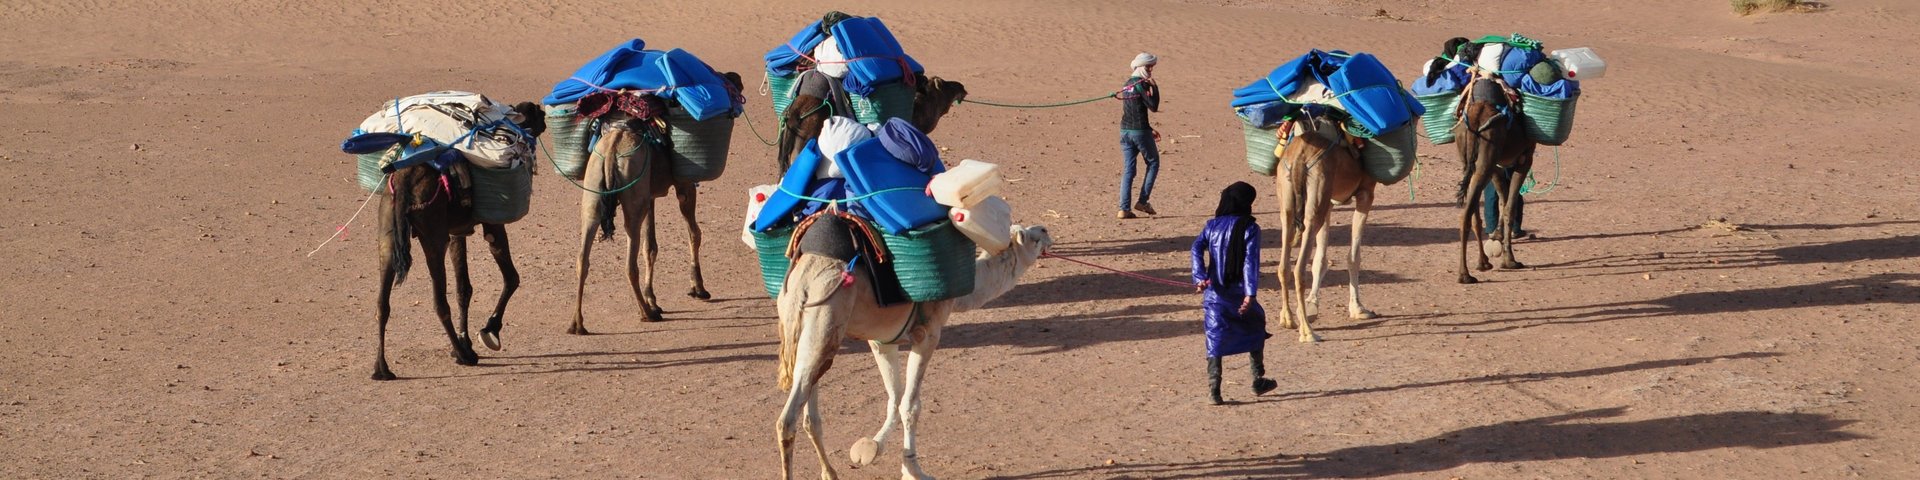 Dromedarführer unterwegs mit den Dromedaren in der Wüste